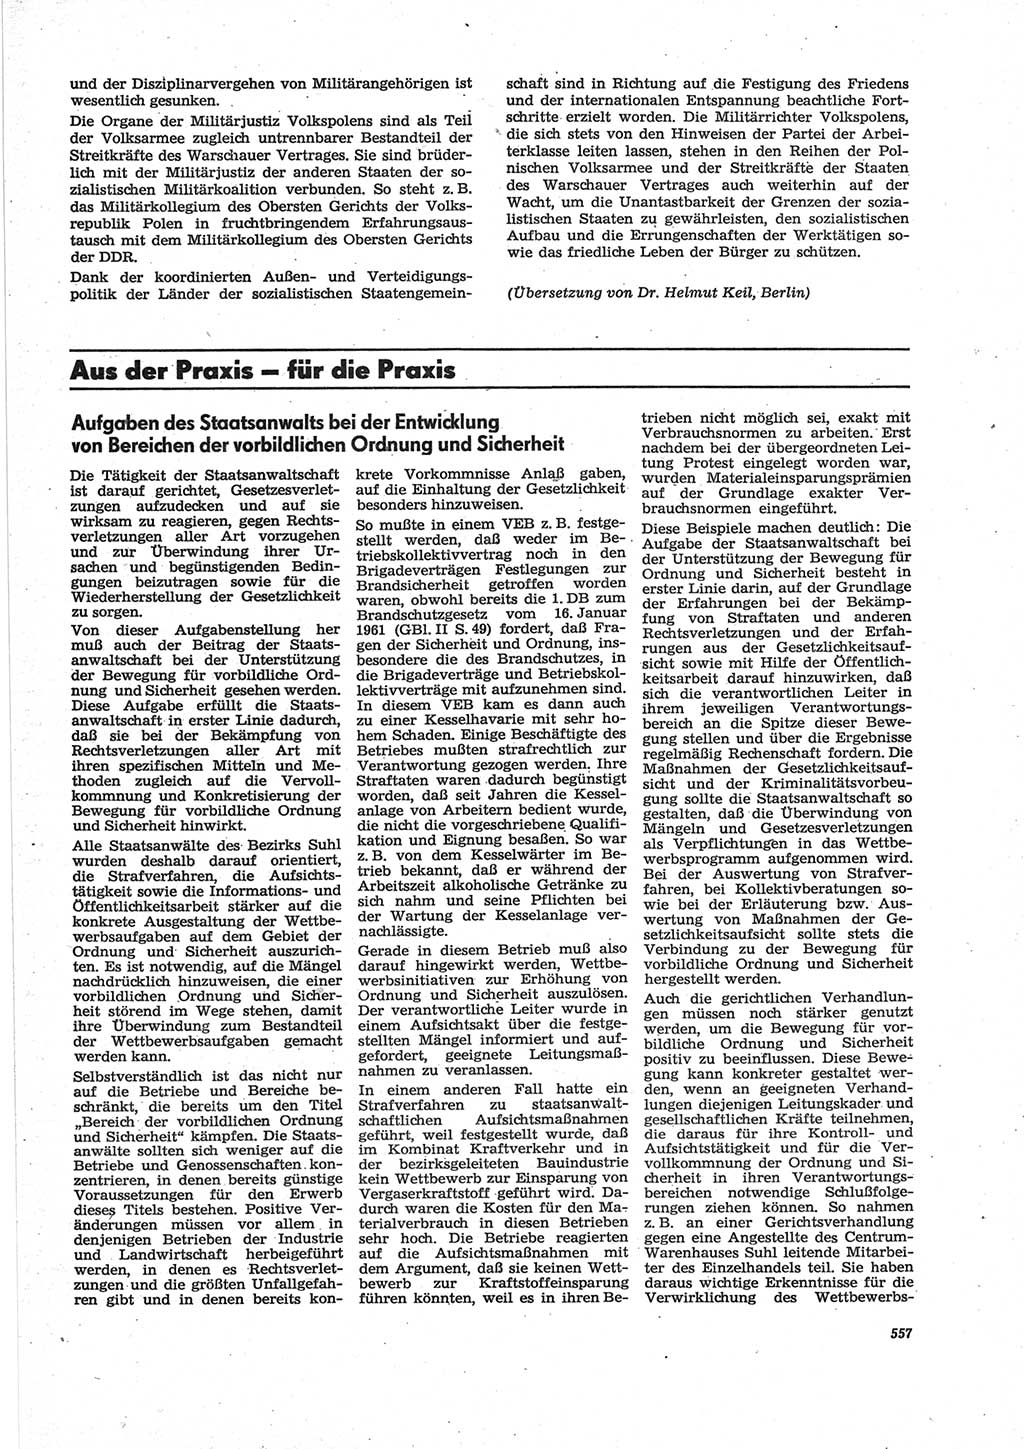 Neue Justiz (NJ), Zeitschrift für Recht und Rechtswissenschaft [Deutsche Demokratische Republik (DDR)], 28. Jahrgang 1974, Seite 557 (NJ DDR 1974, S. 557)